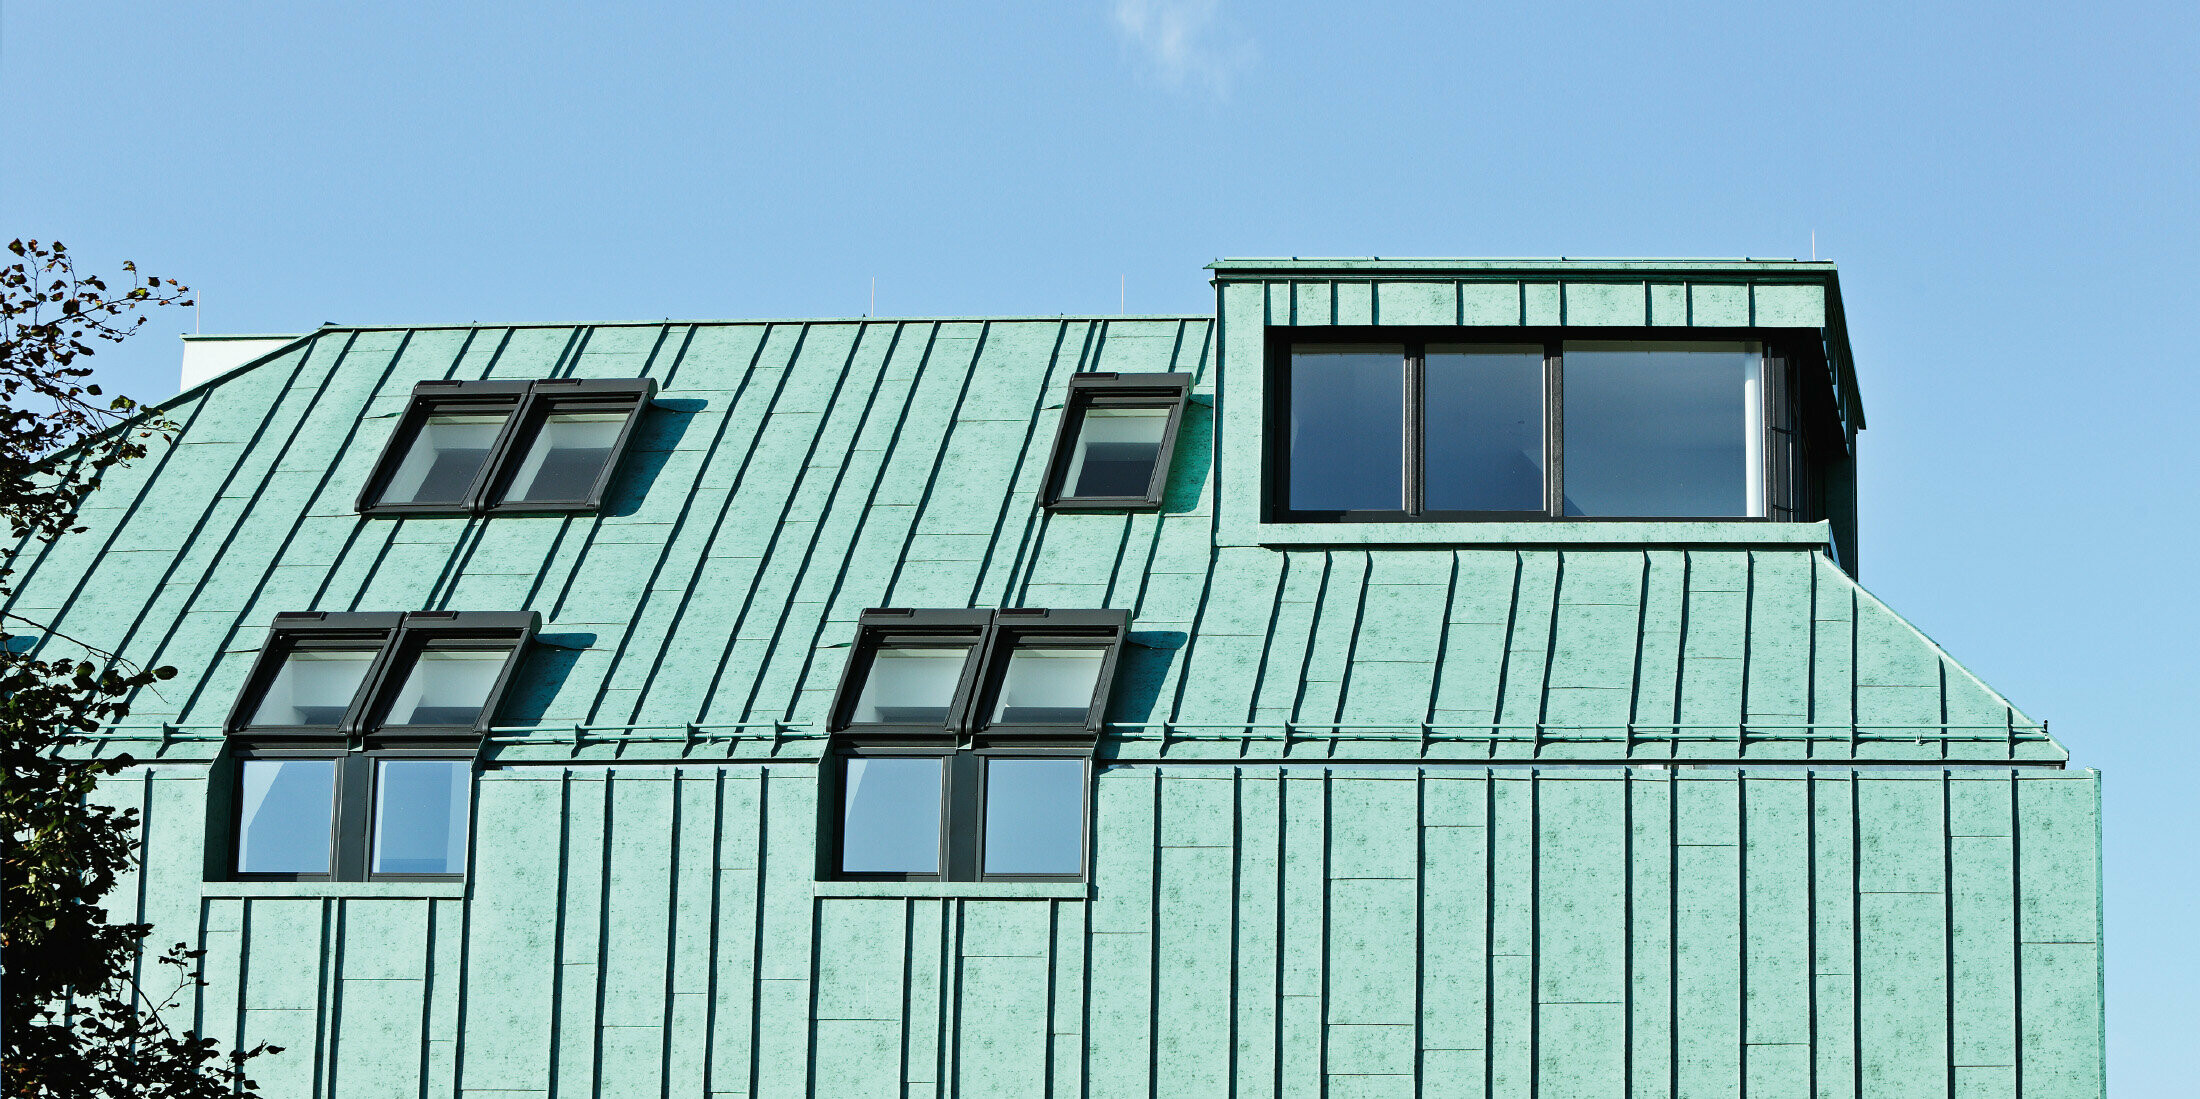 Riešenie strechy a fasády so systémom PREFALZ vo farbe patina zelená od spoločnosti PREFA s rôznymi šírkami pásov